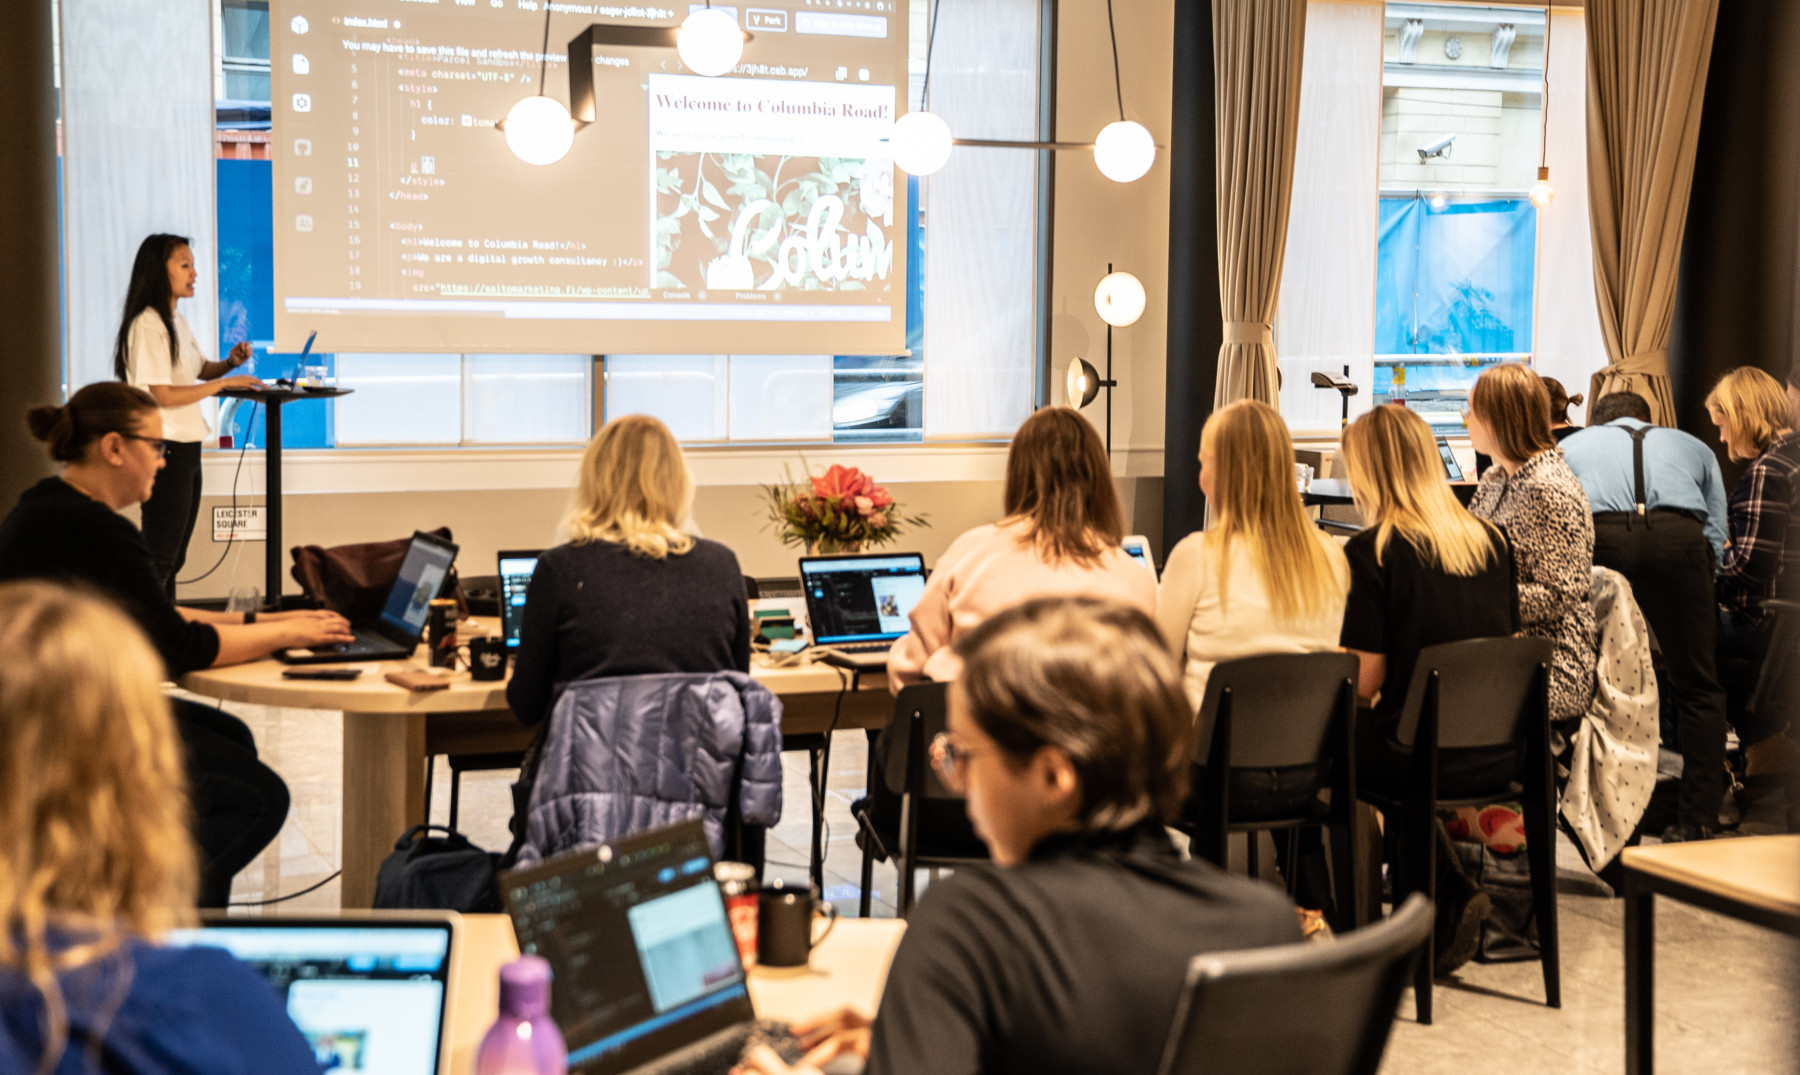 Ante sus ordenadores, un grupo de mujeres permanece atento a la presentación que está llevando a cabo otra mujer.